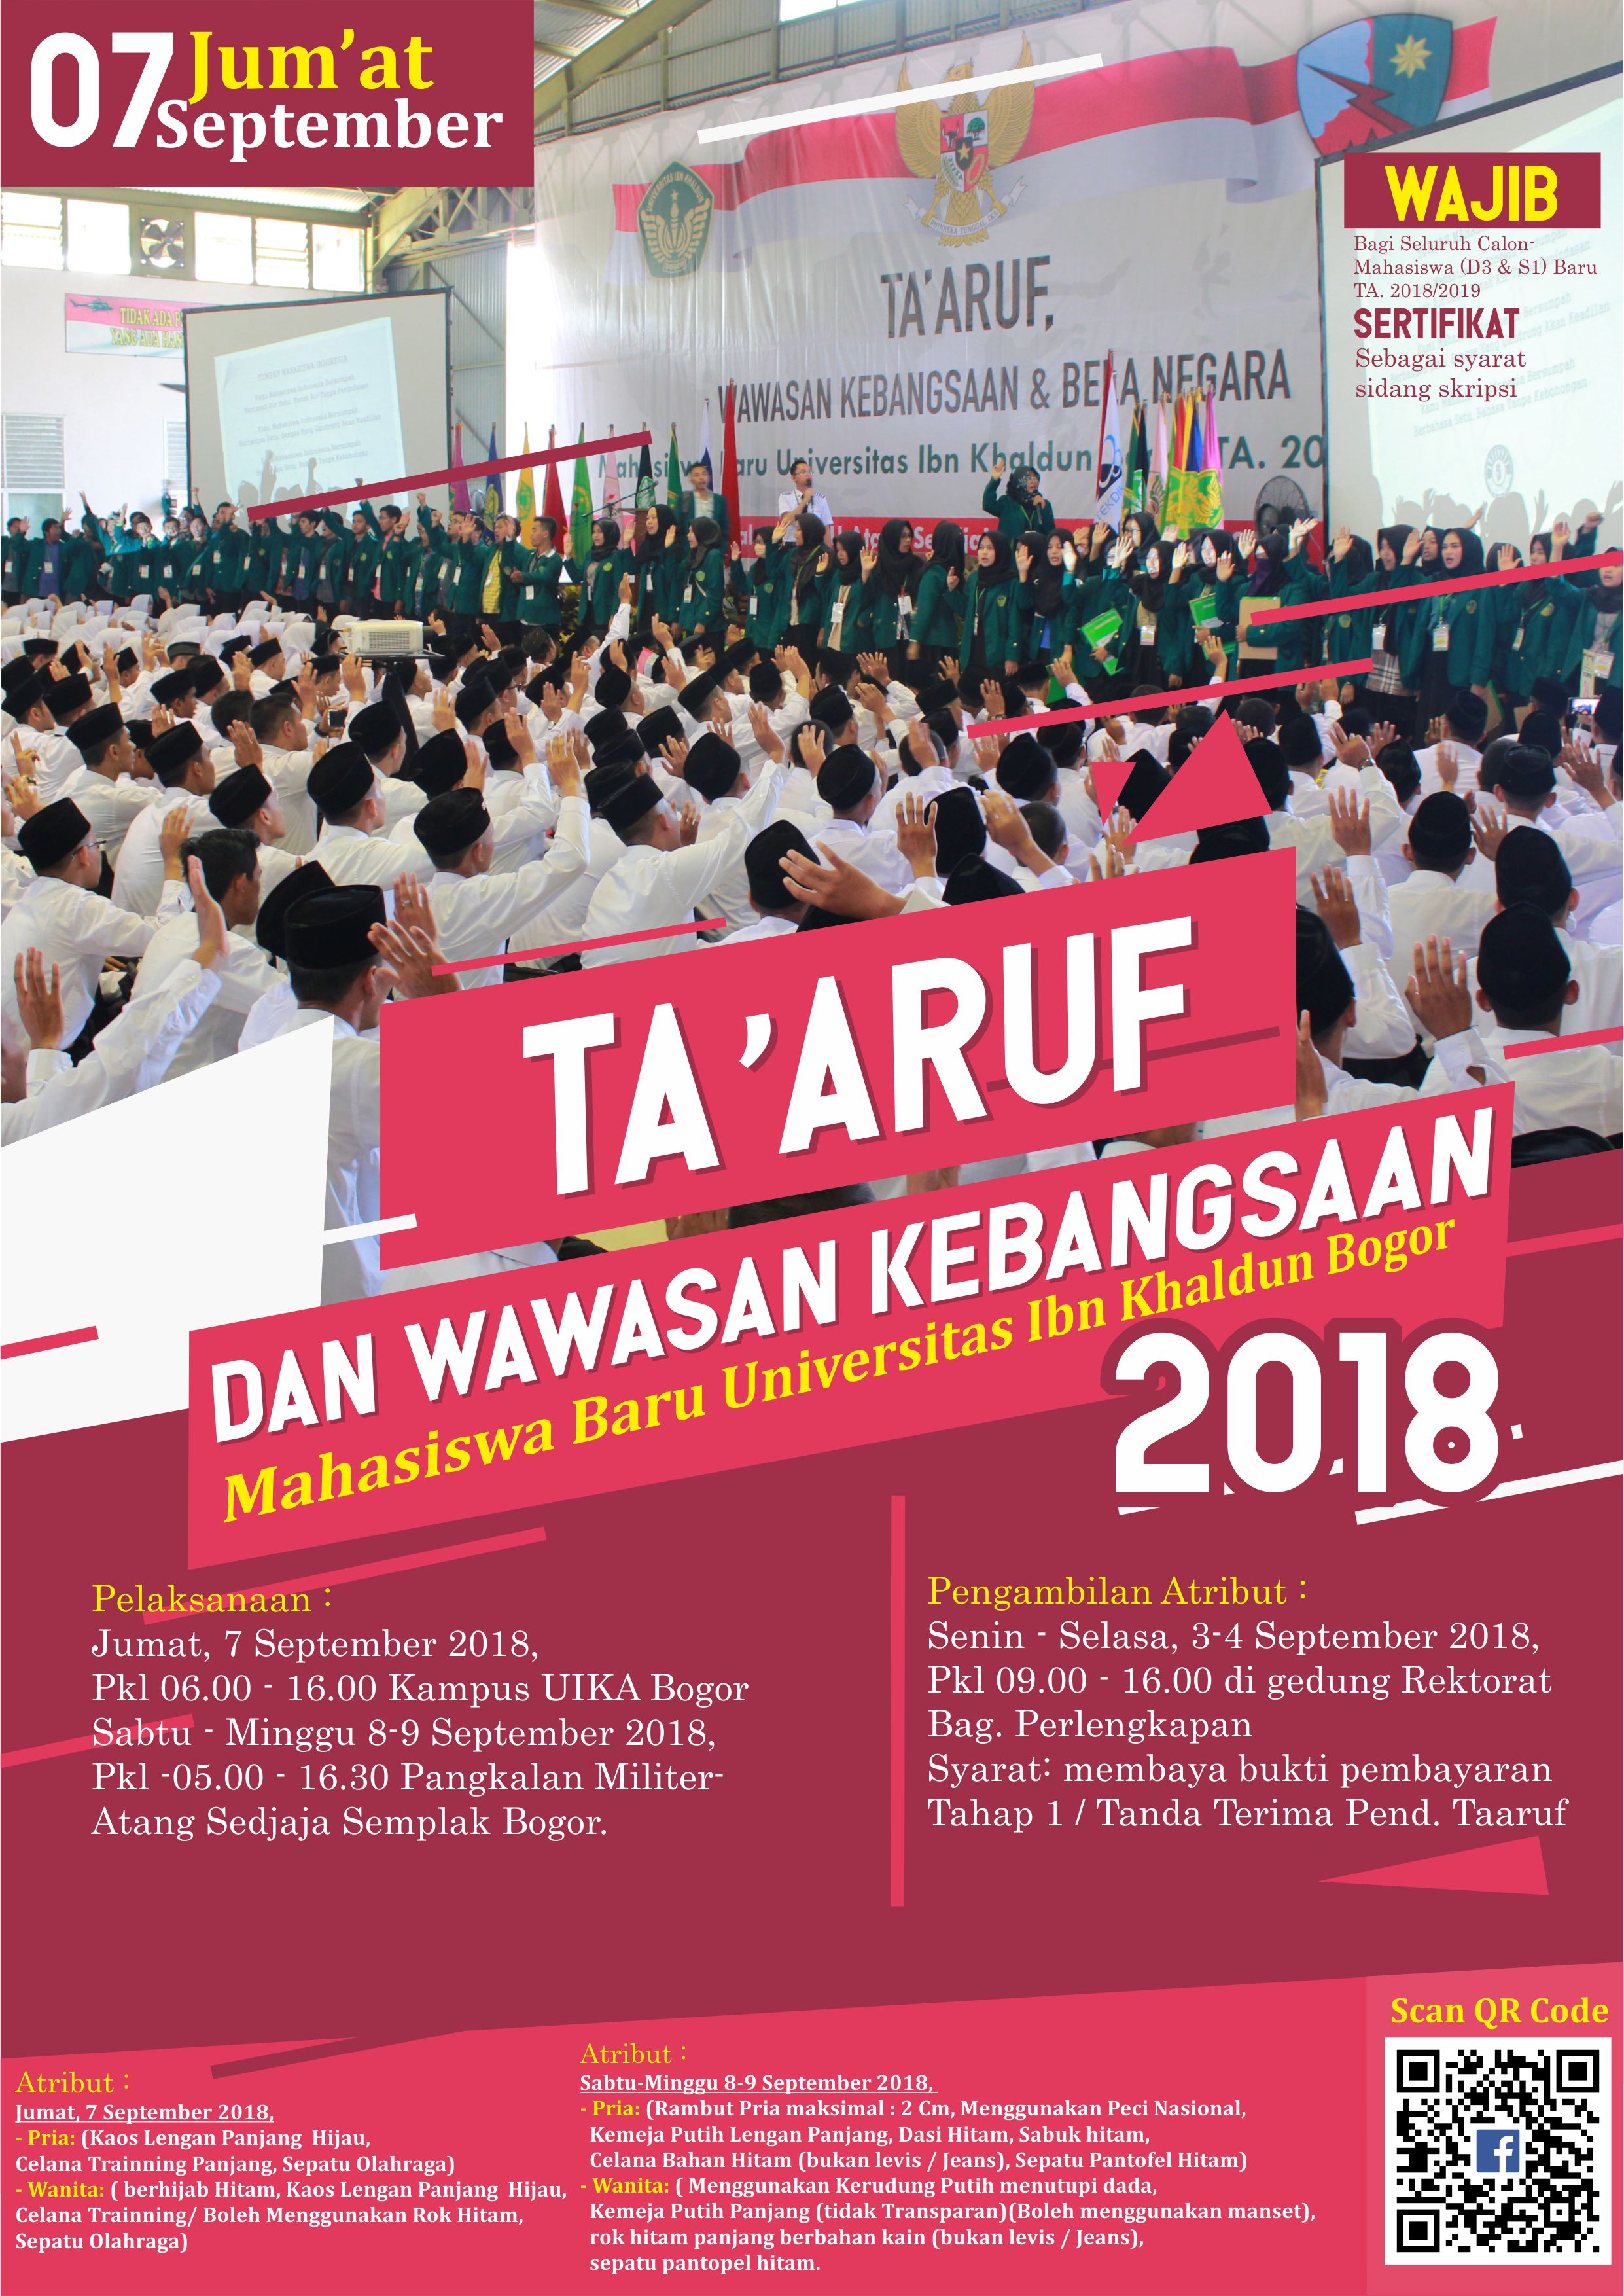 Pelaksanaan Taaruf dan Wawasan Kebangsaan Mahasiswa Baru TA 2018 2019